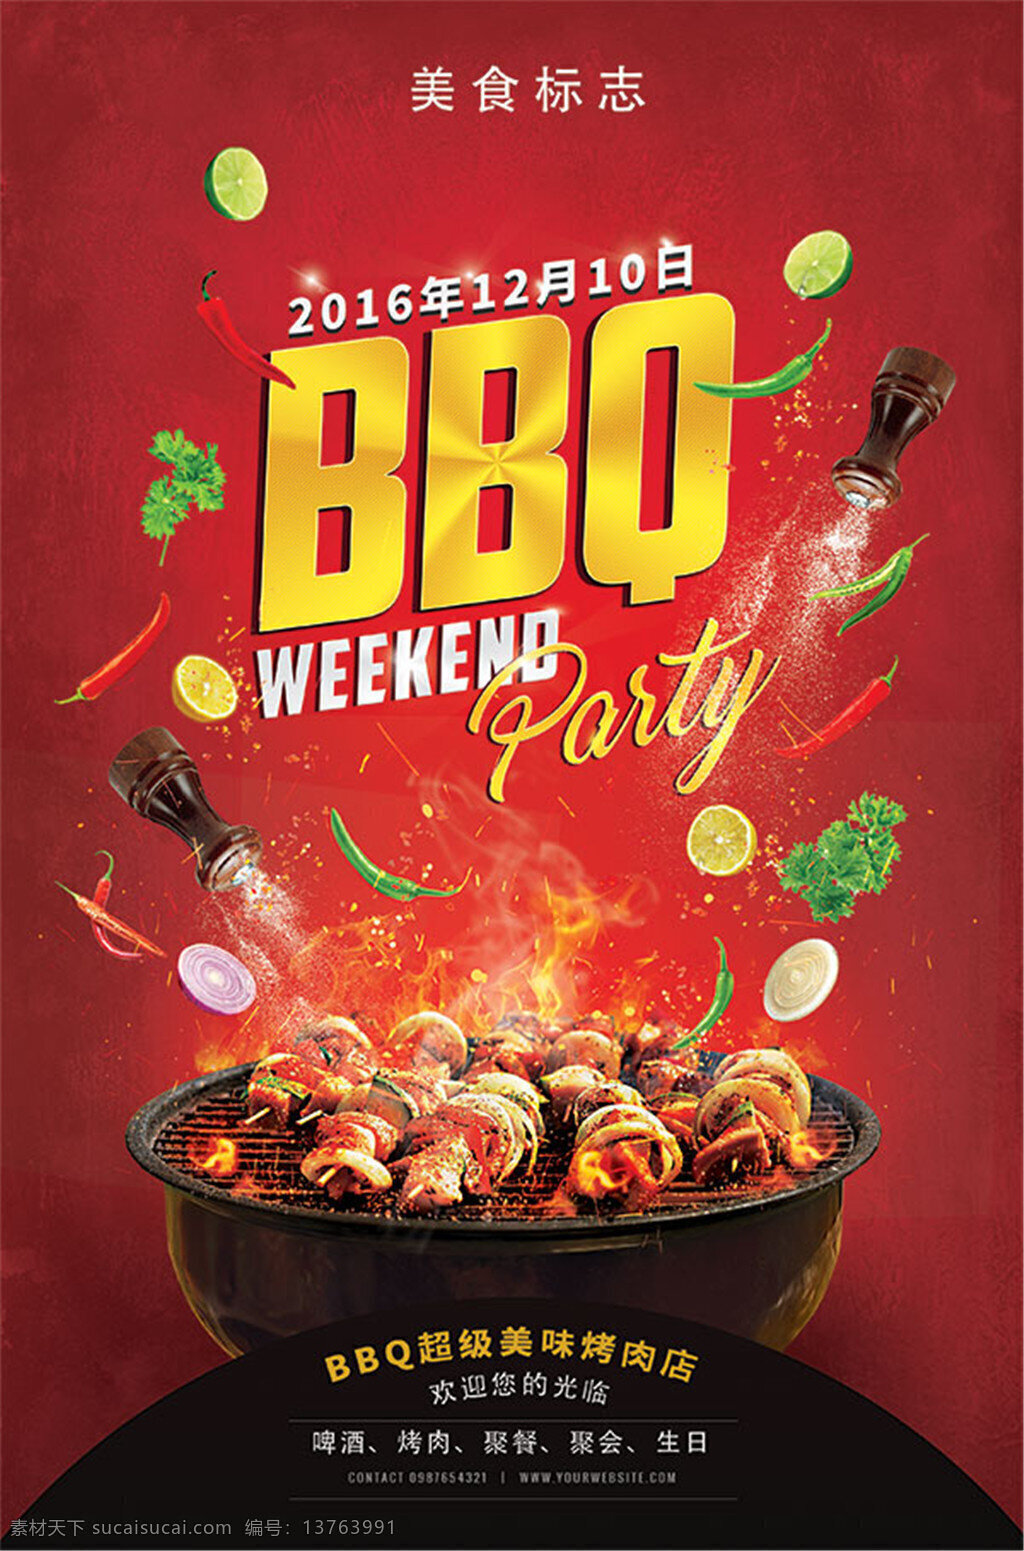 bbq 烤 肉店 广告 广告设计模板 烤肉 快餐 烧烤 自助烧烤 自助餐 自助 餐厅 餐饮海报 海报设